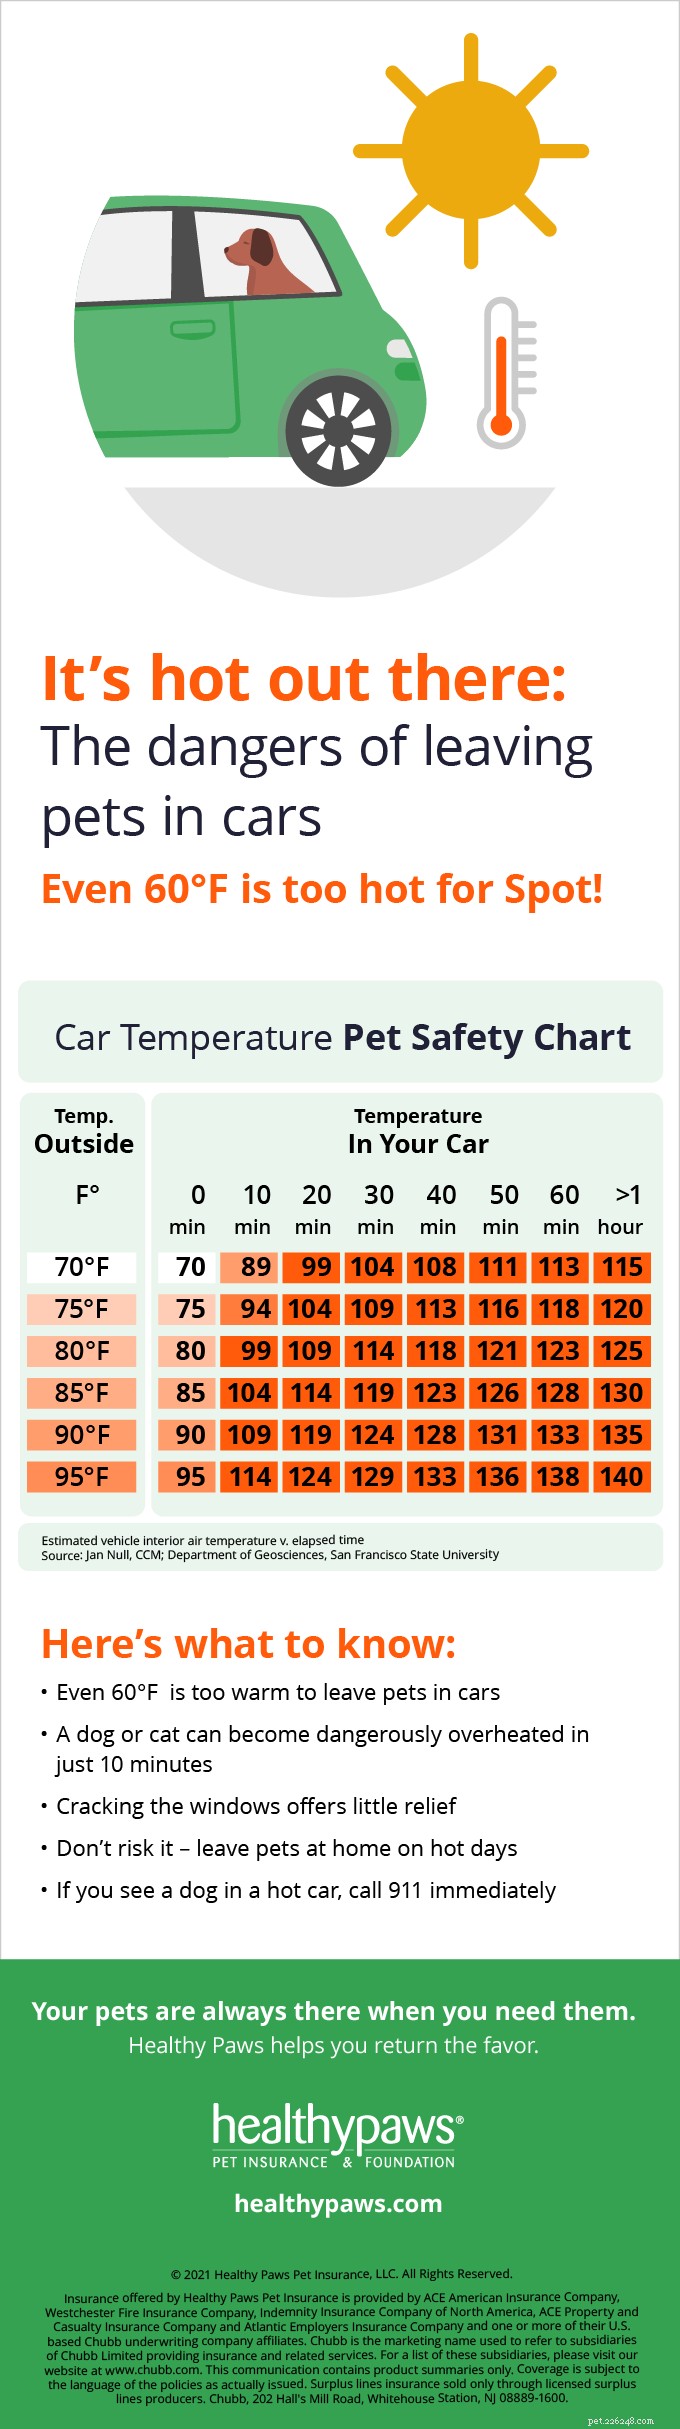 Quanto fa troppo caldo?:cosa devi sapere sugli animali domestici in auto